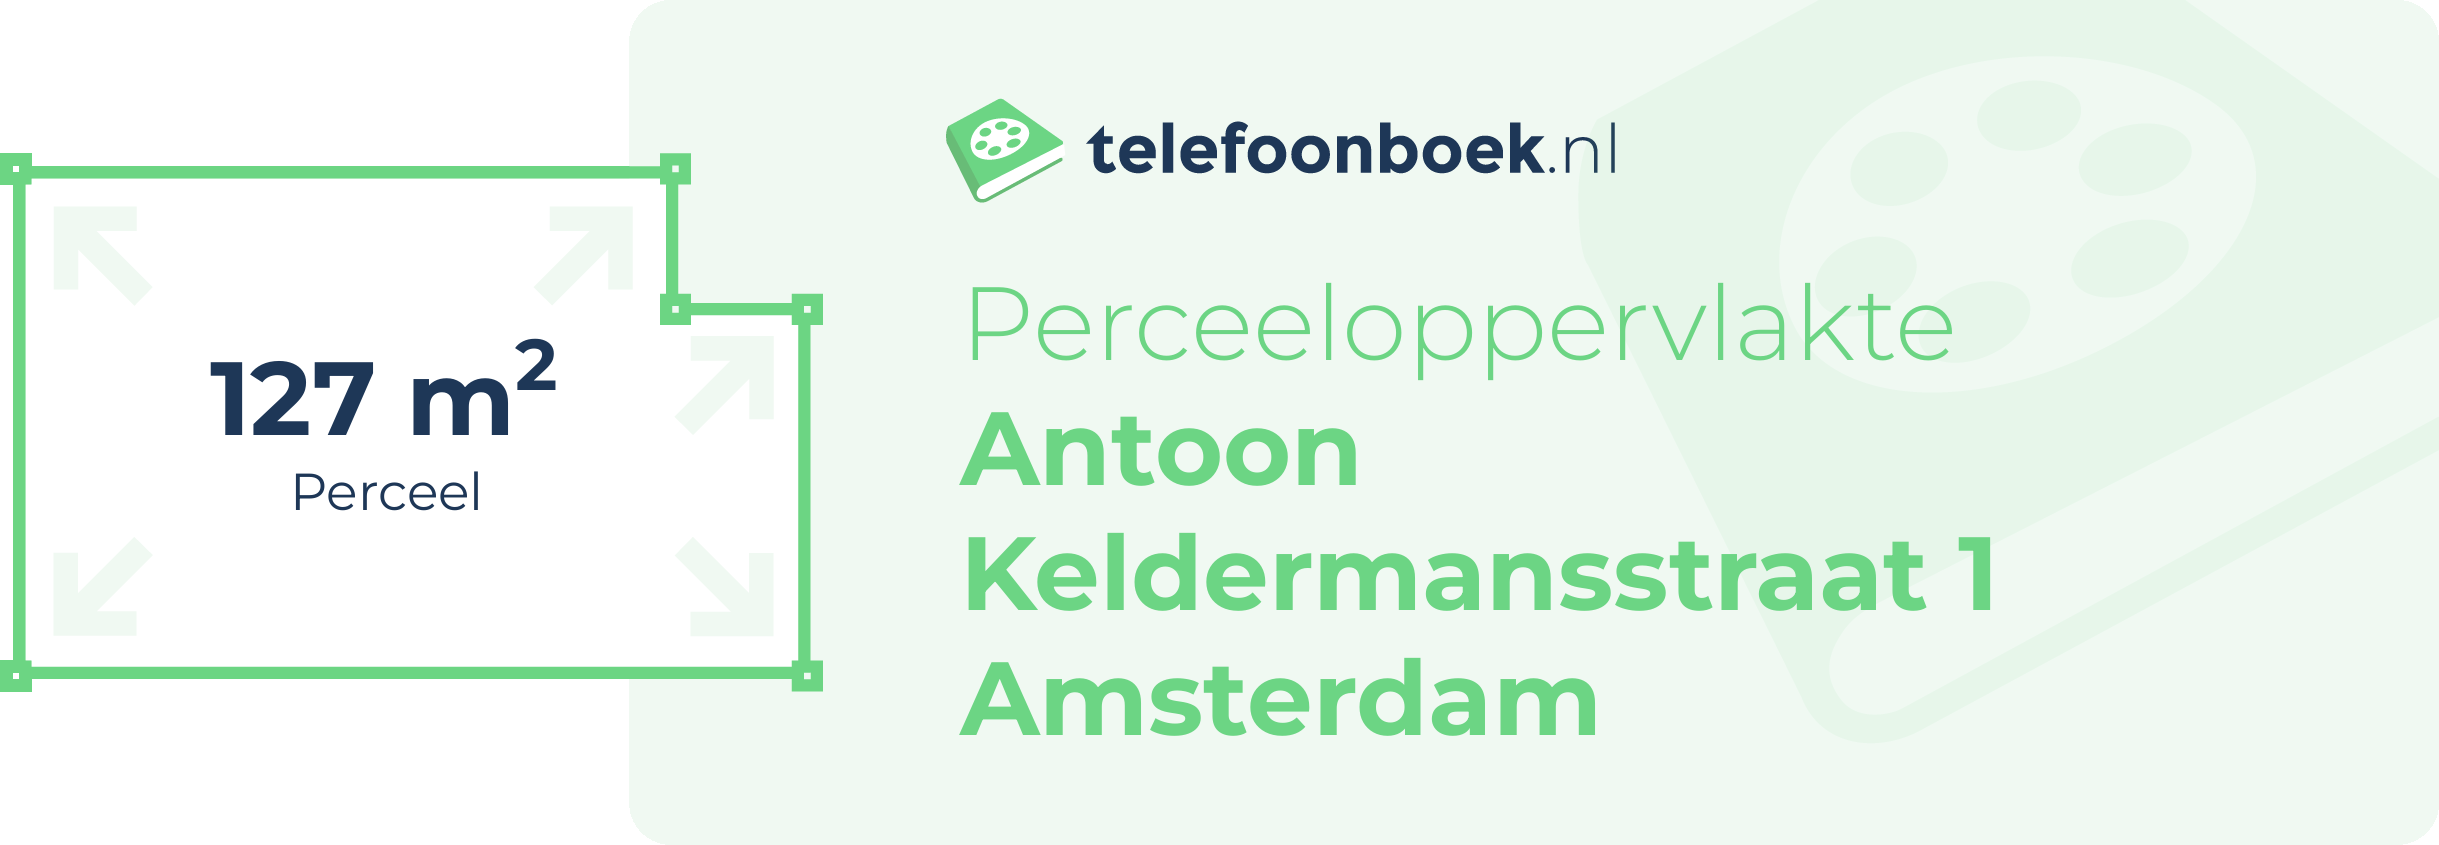 Perceeloppervlakte Antoon Keldermansstraat 1 Amsterdam